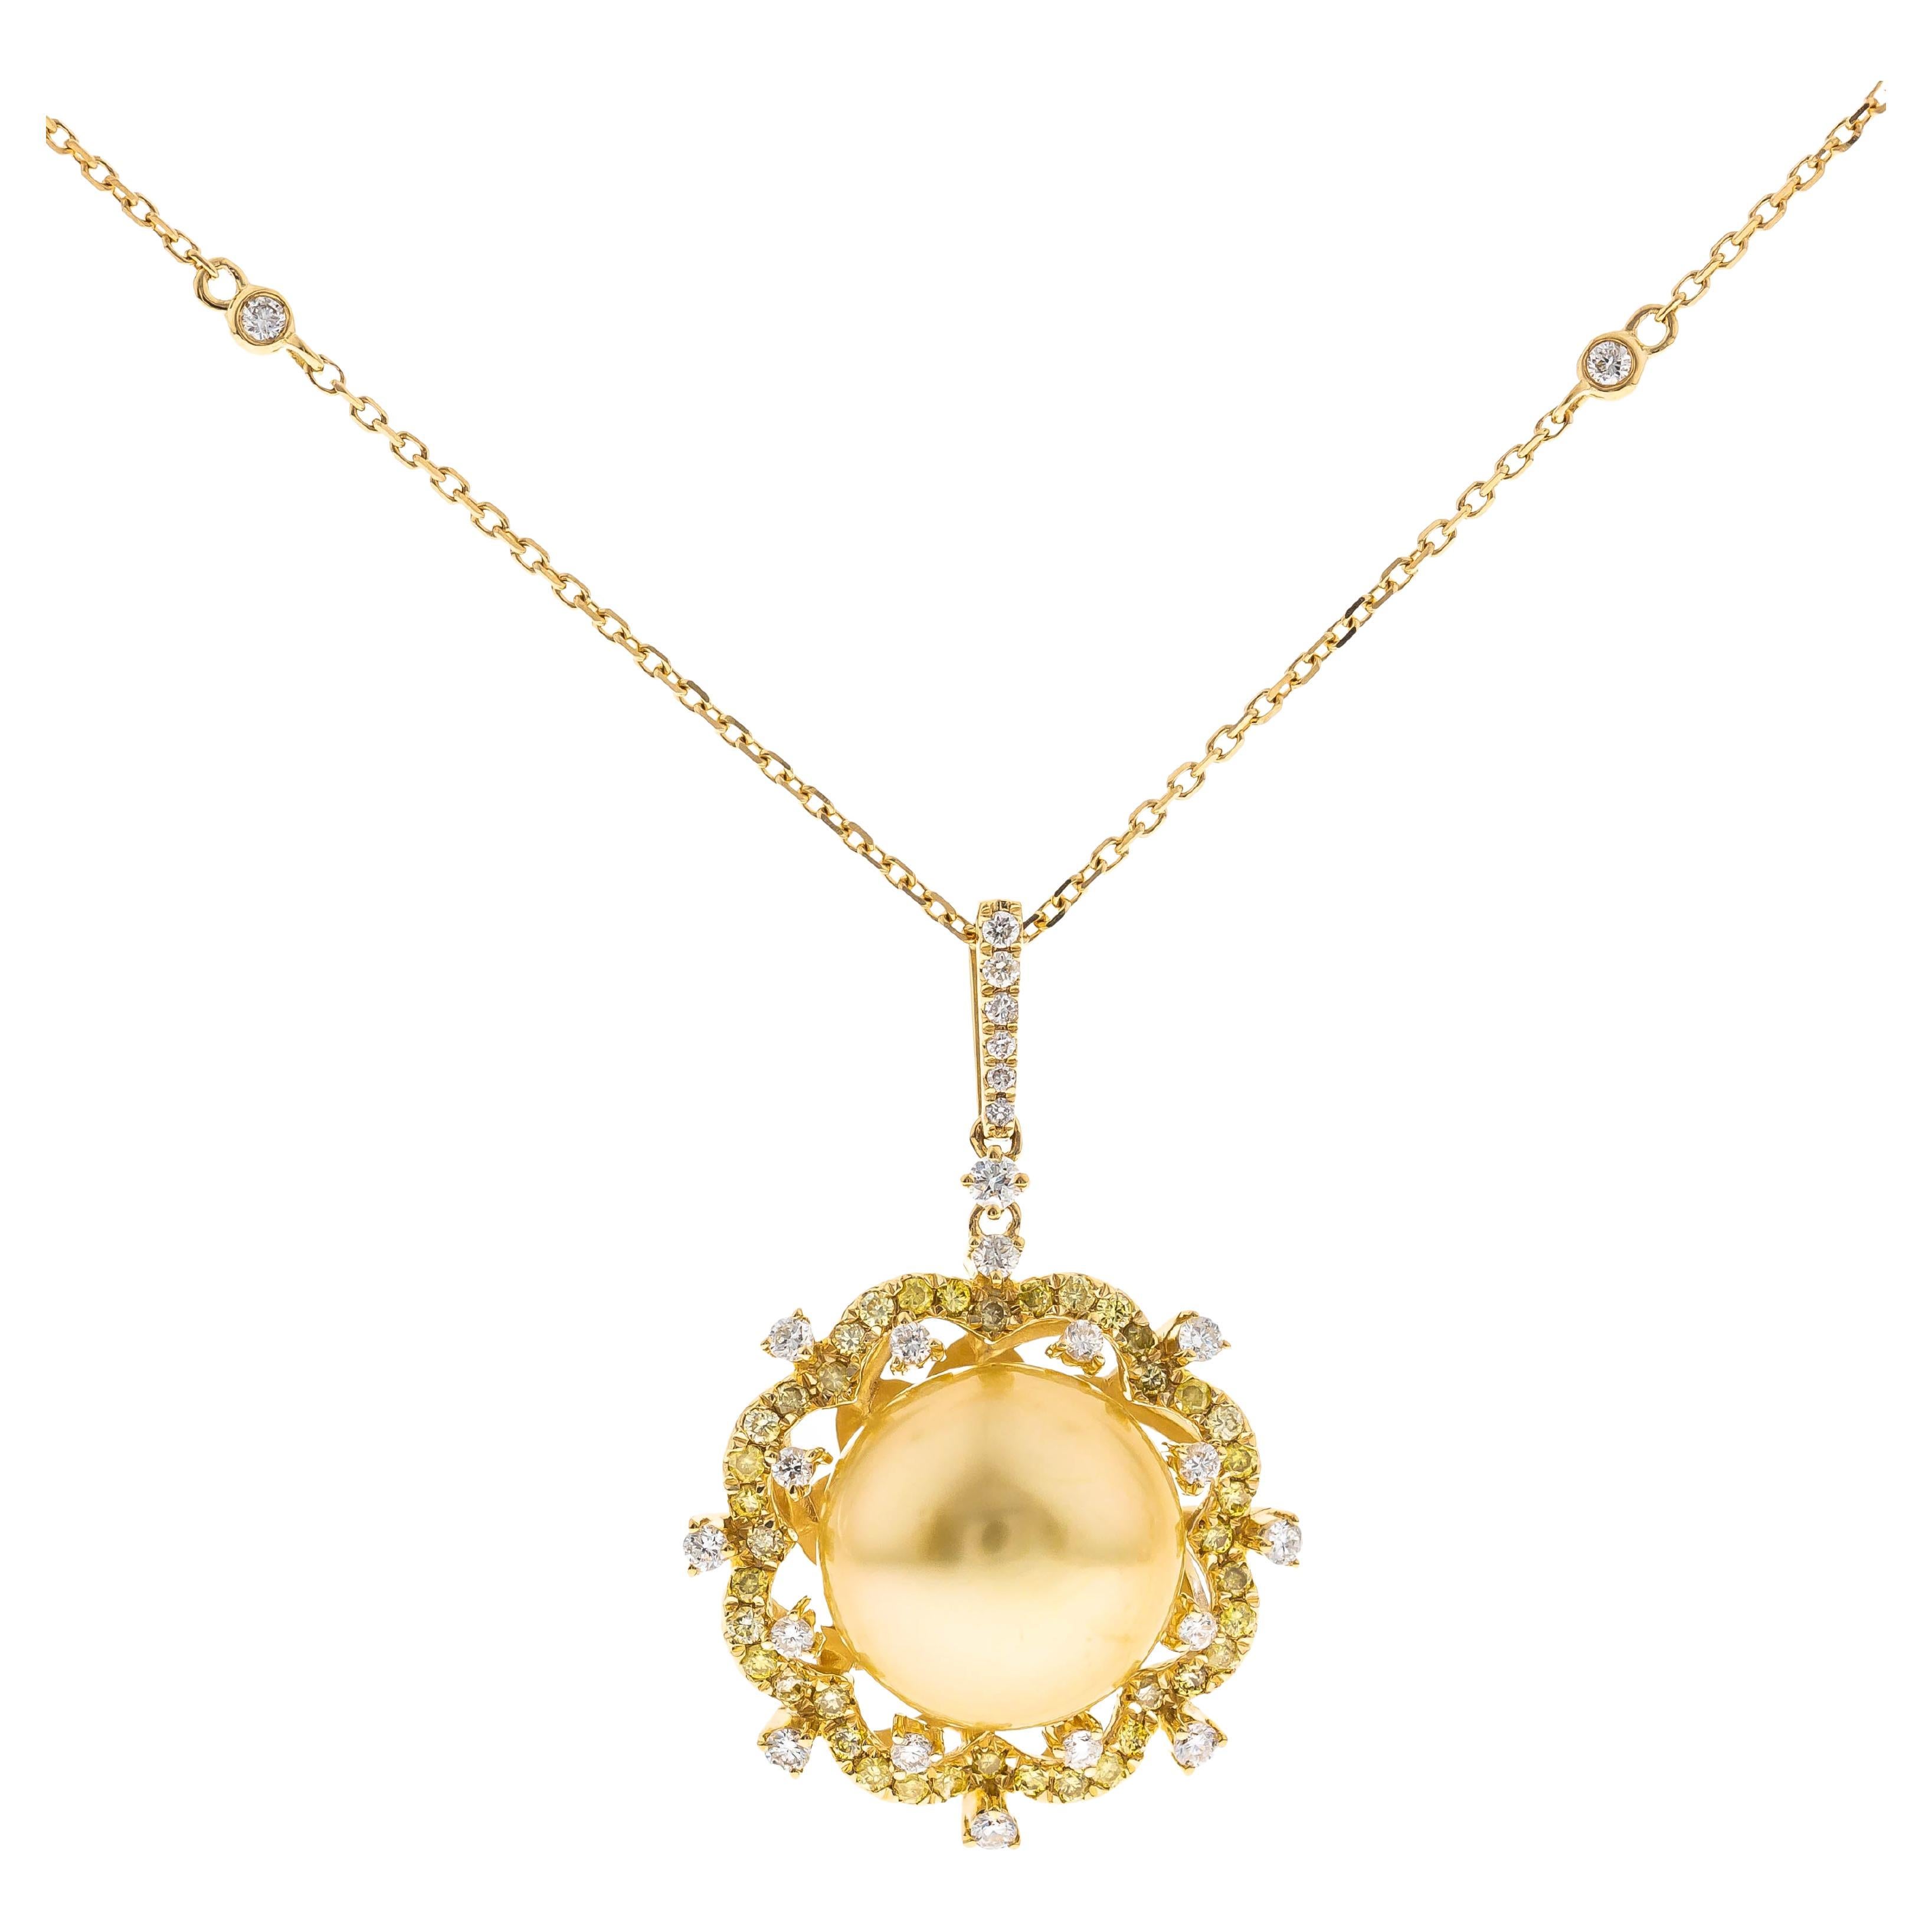 15.pendentif en or 18KY avec perle des mers du Sud ronde de 36 carats et accents en diamant